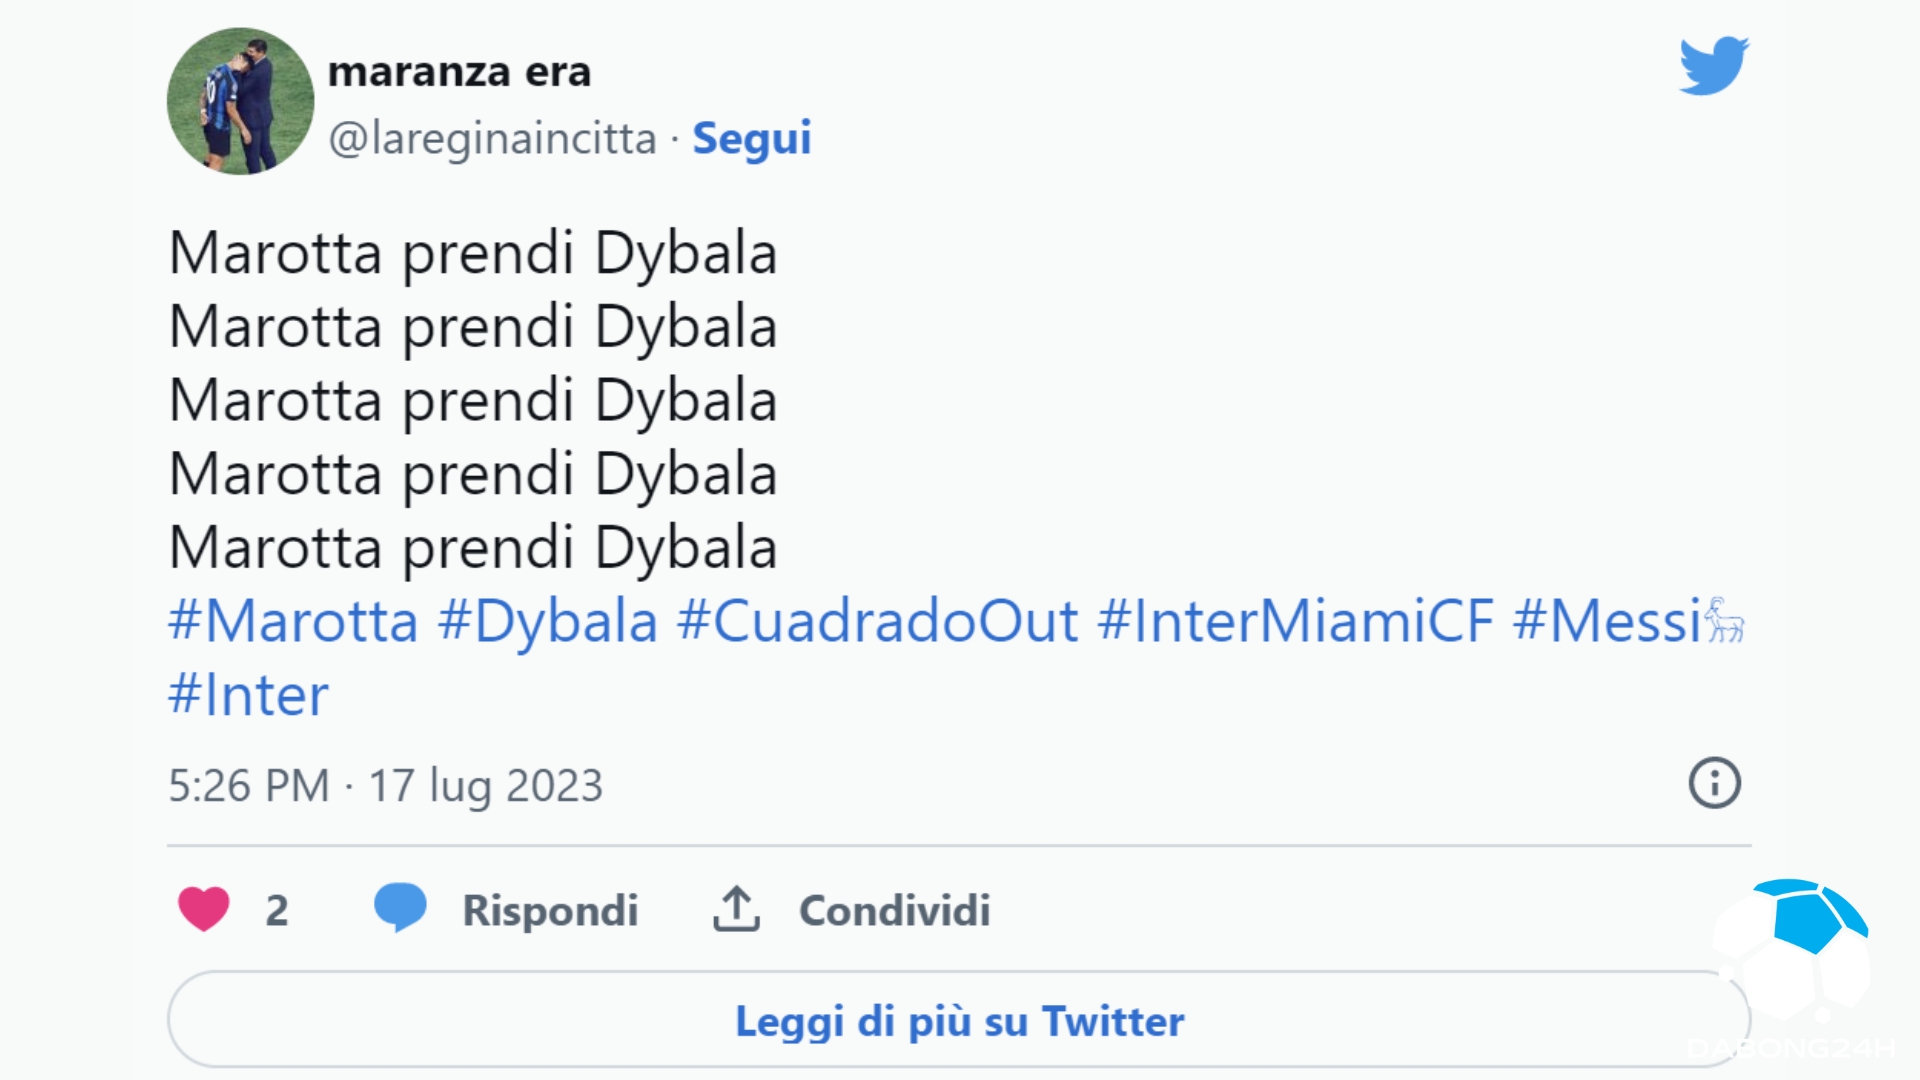 Dybala tới Inter với điều khoản 20 triệu. Cách hoạt động thực sự như thế nào? - 2